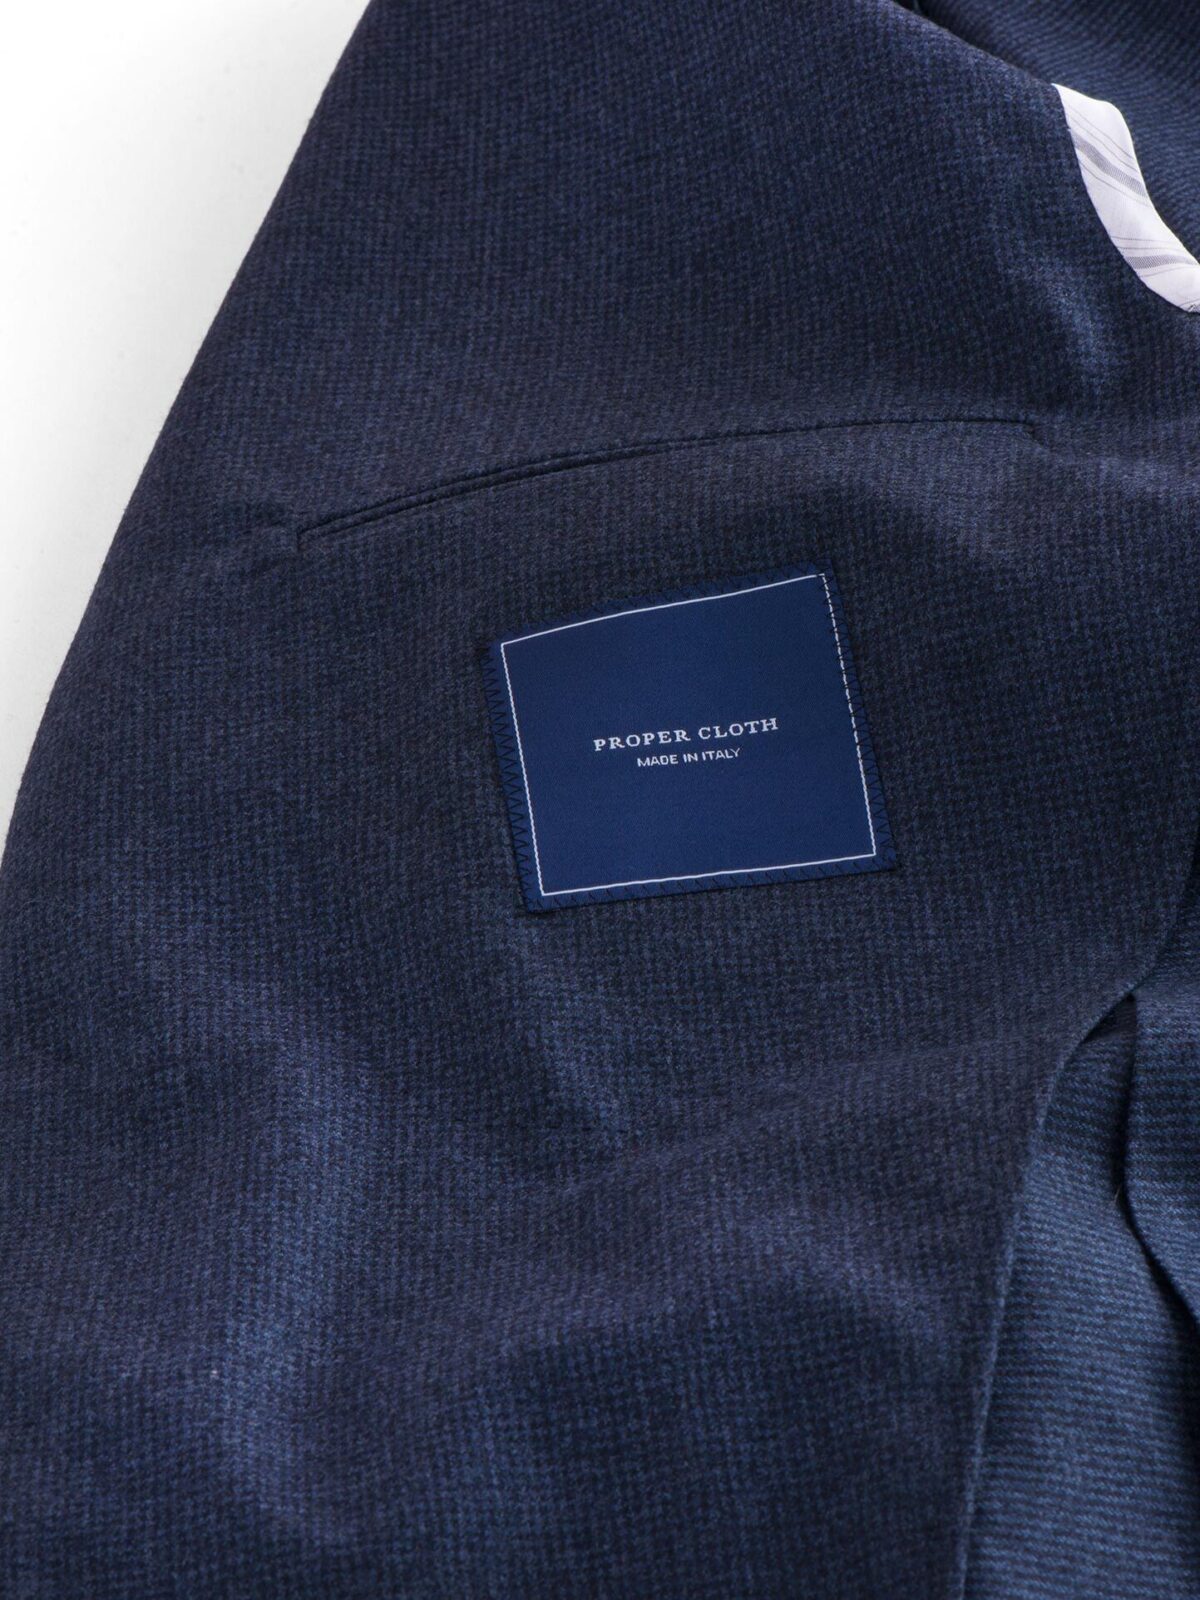 Blue Houndstooth Genova Jacket